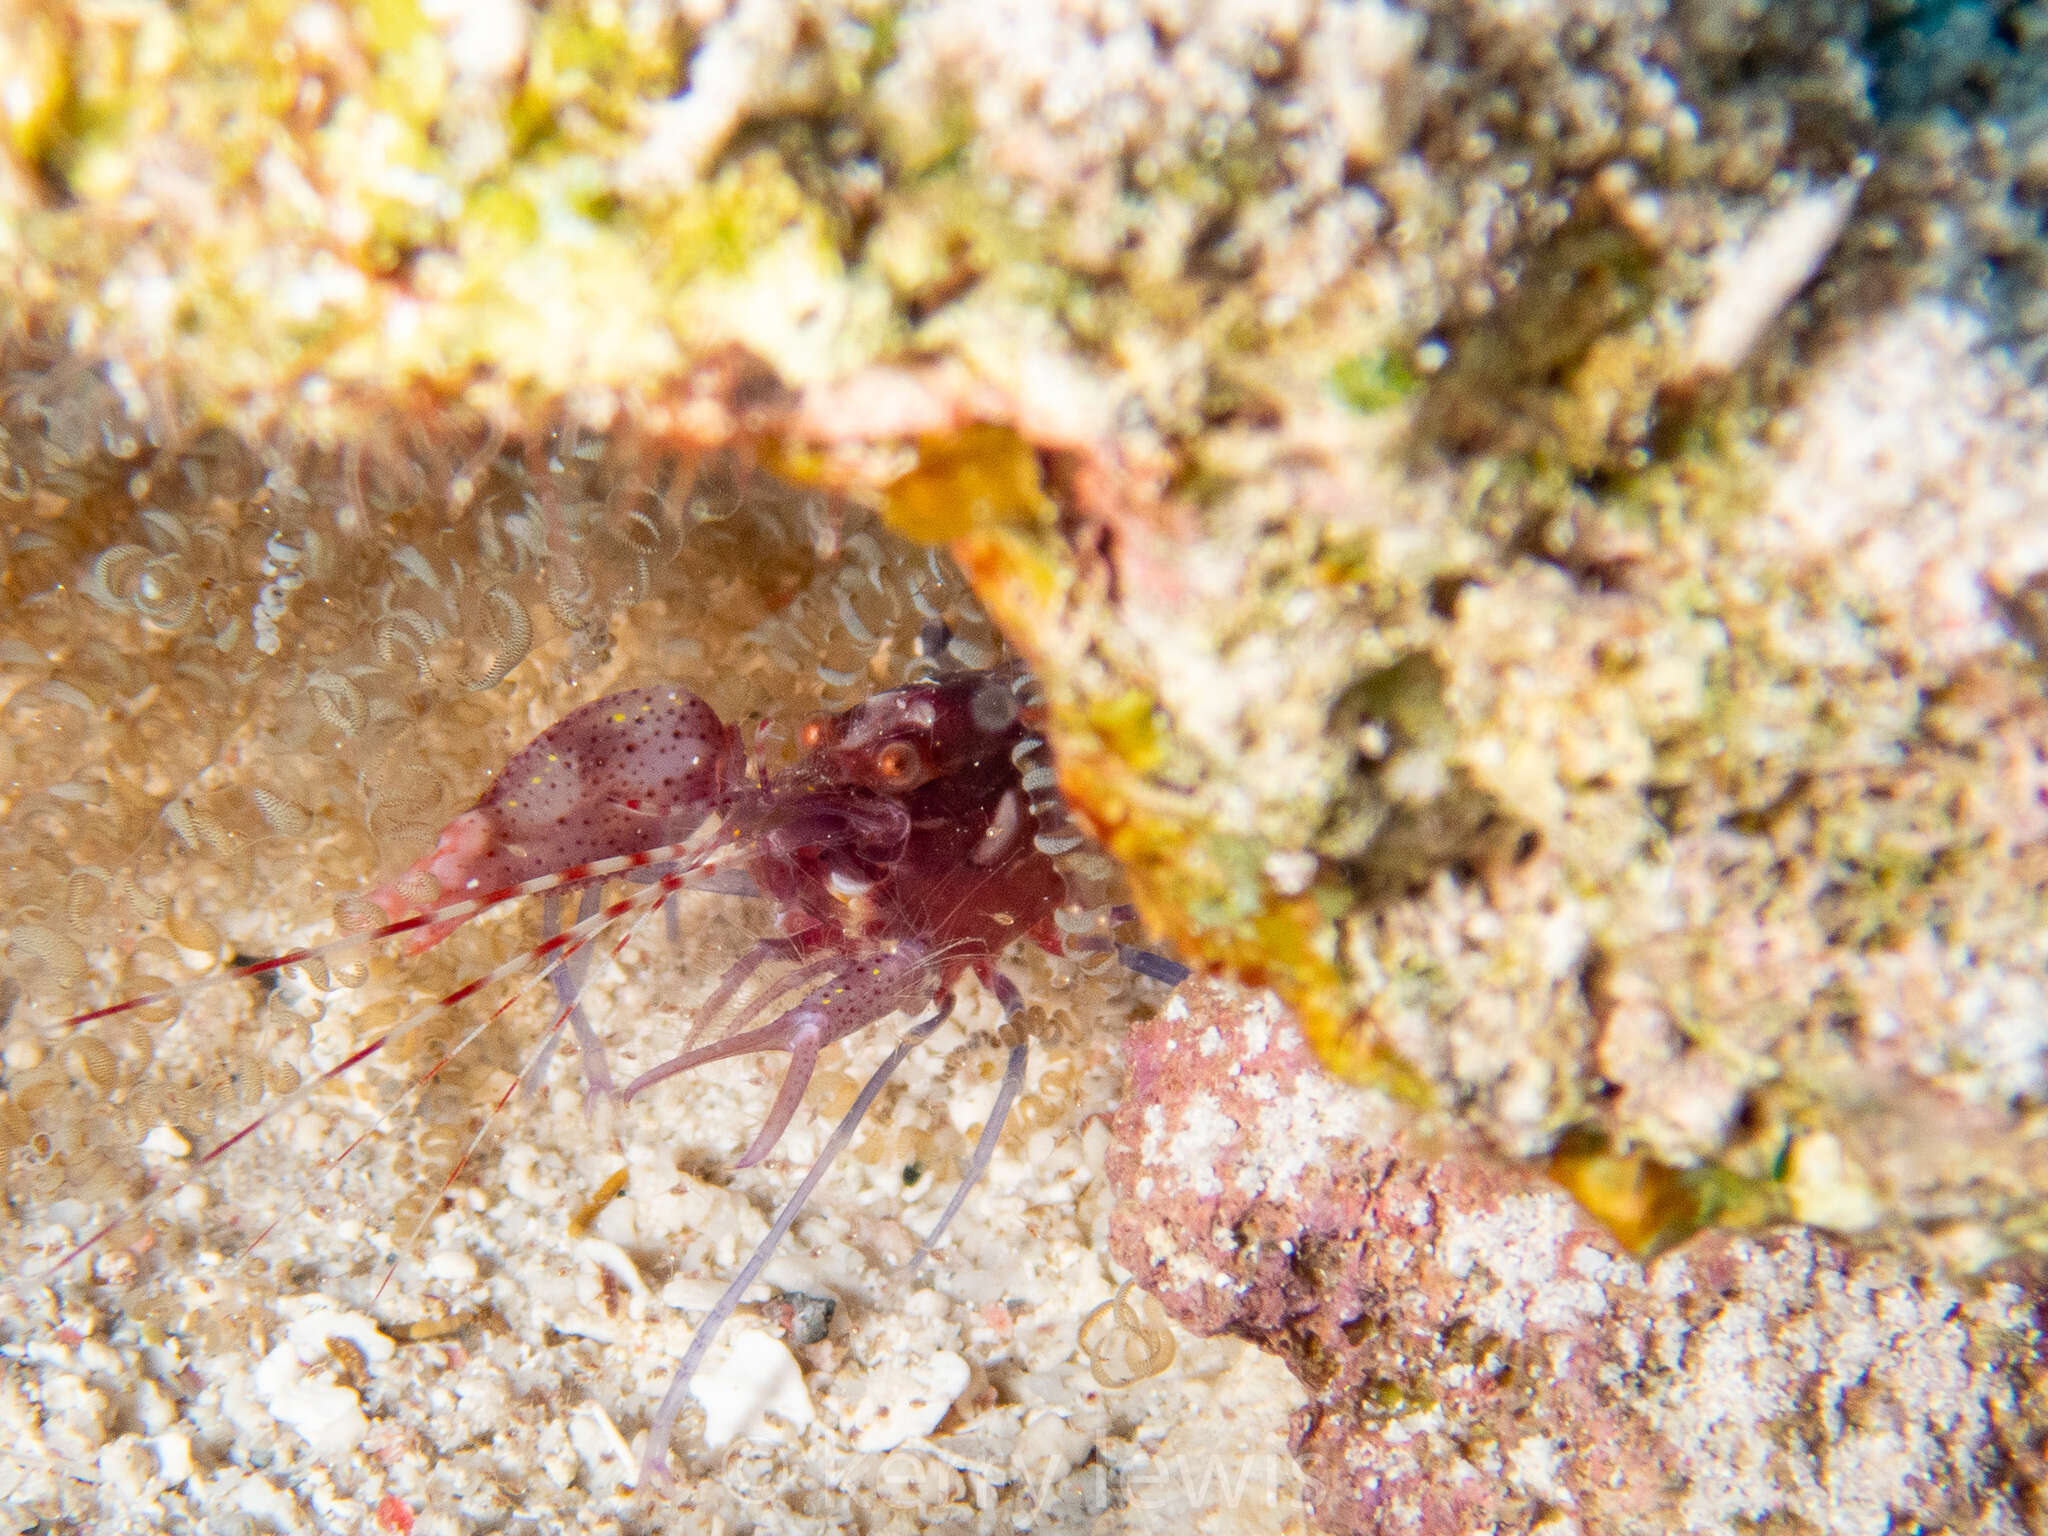 Image of brown pistol shrimp